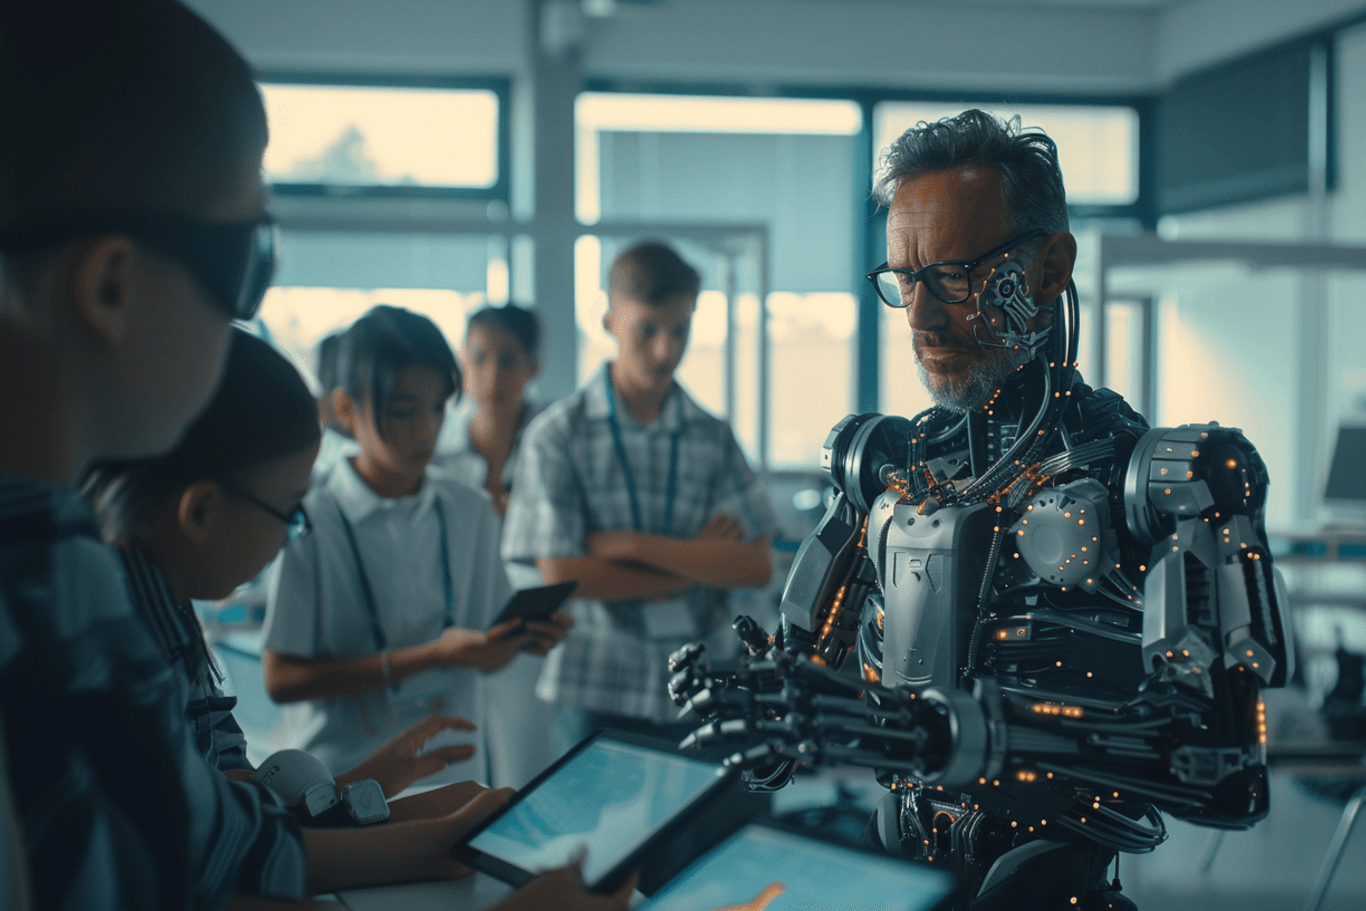 Halb Mensch, halb Roboter: Künstliche Intelligenz wird in elementare Lebensbereiche wie Bildung eindringen.